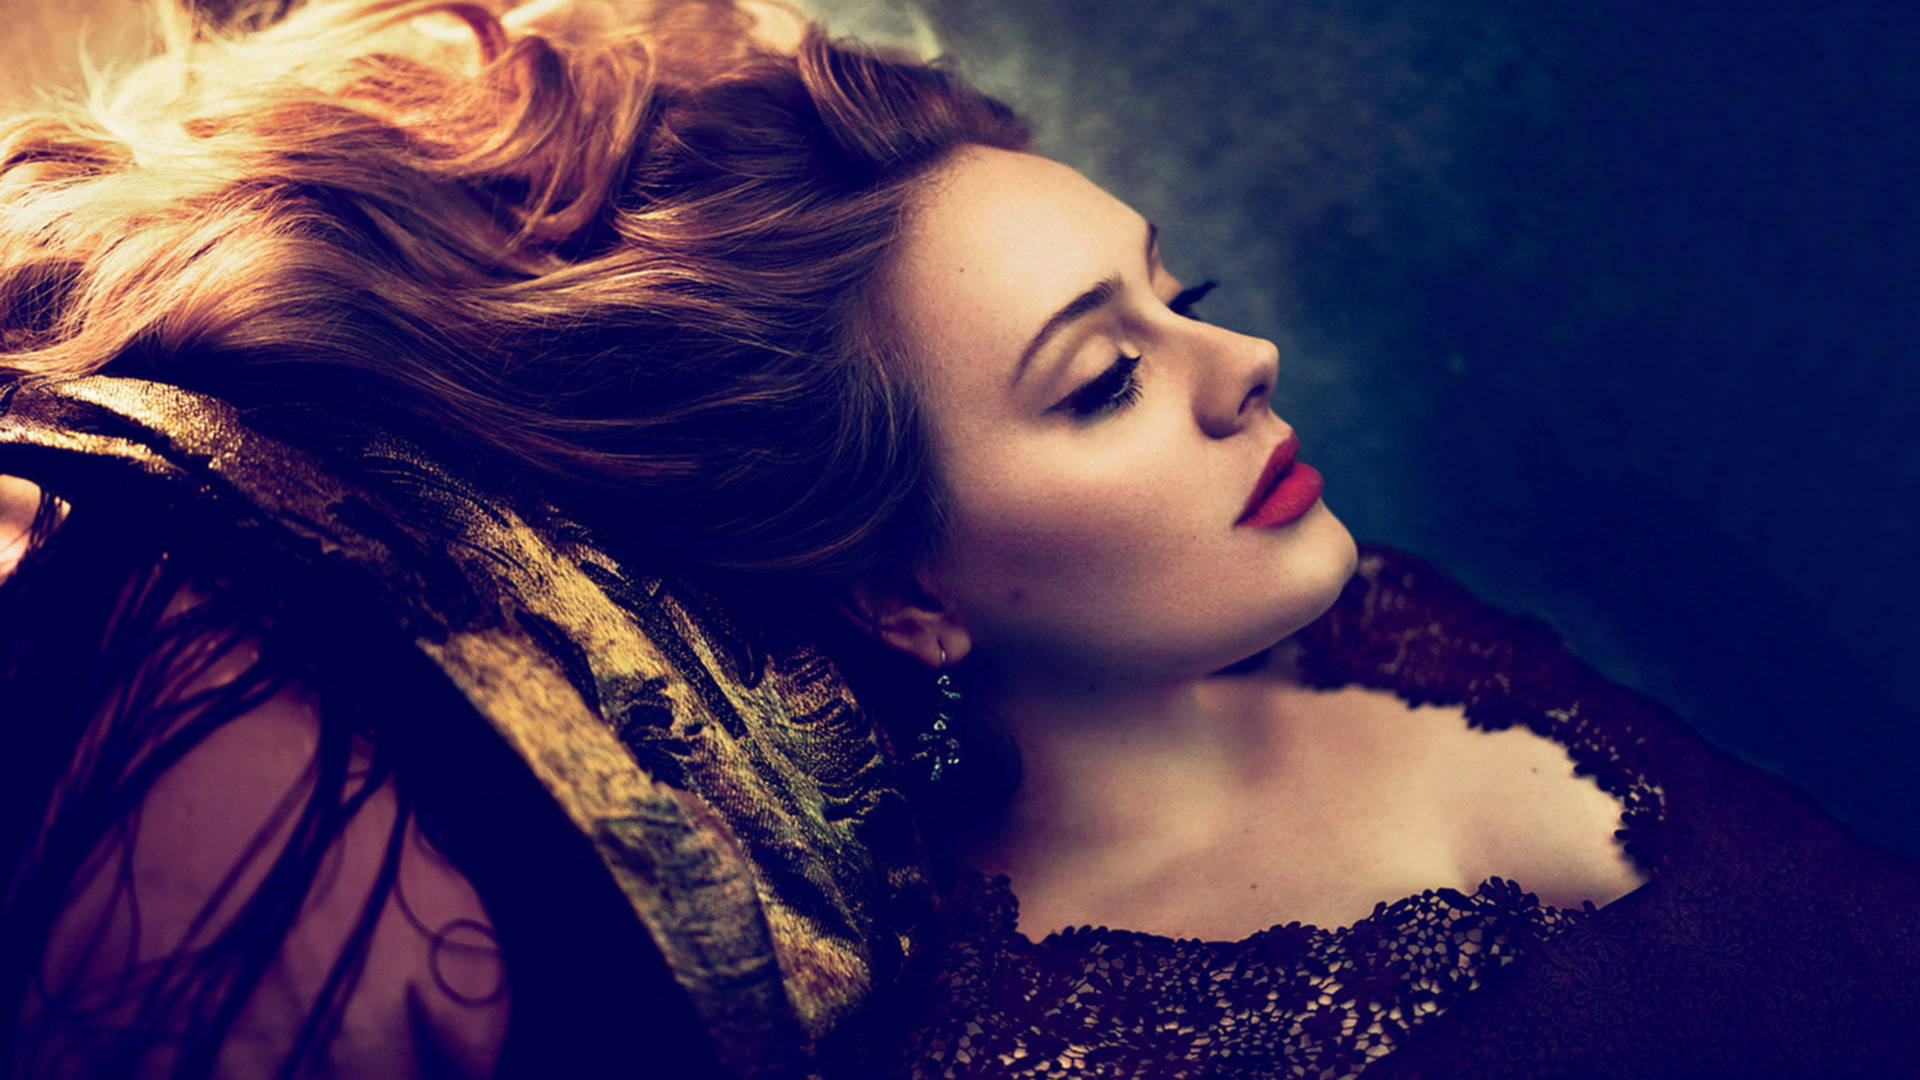 Adele Vogue Photoshoot Background